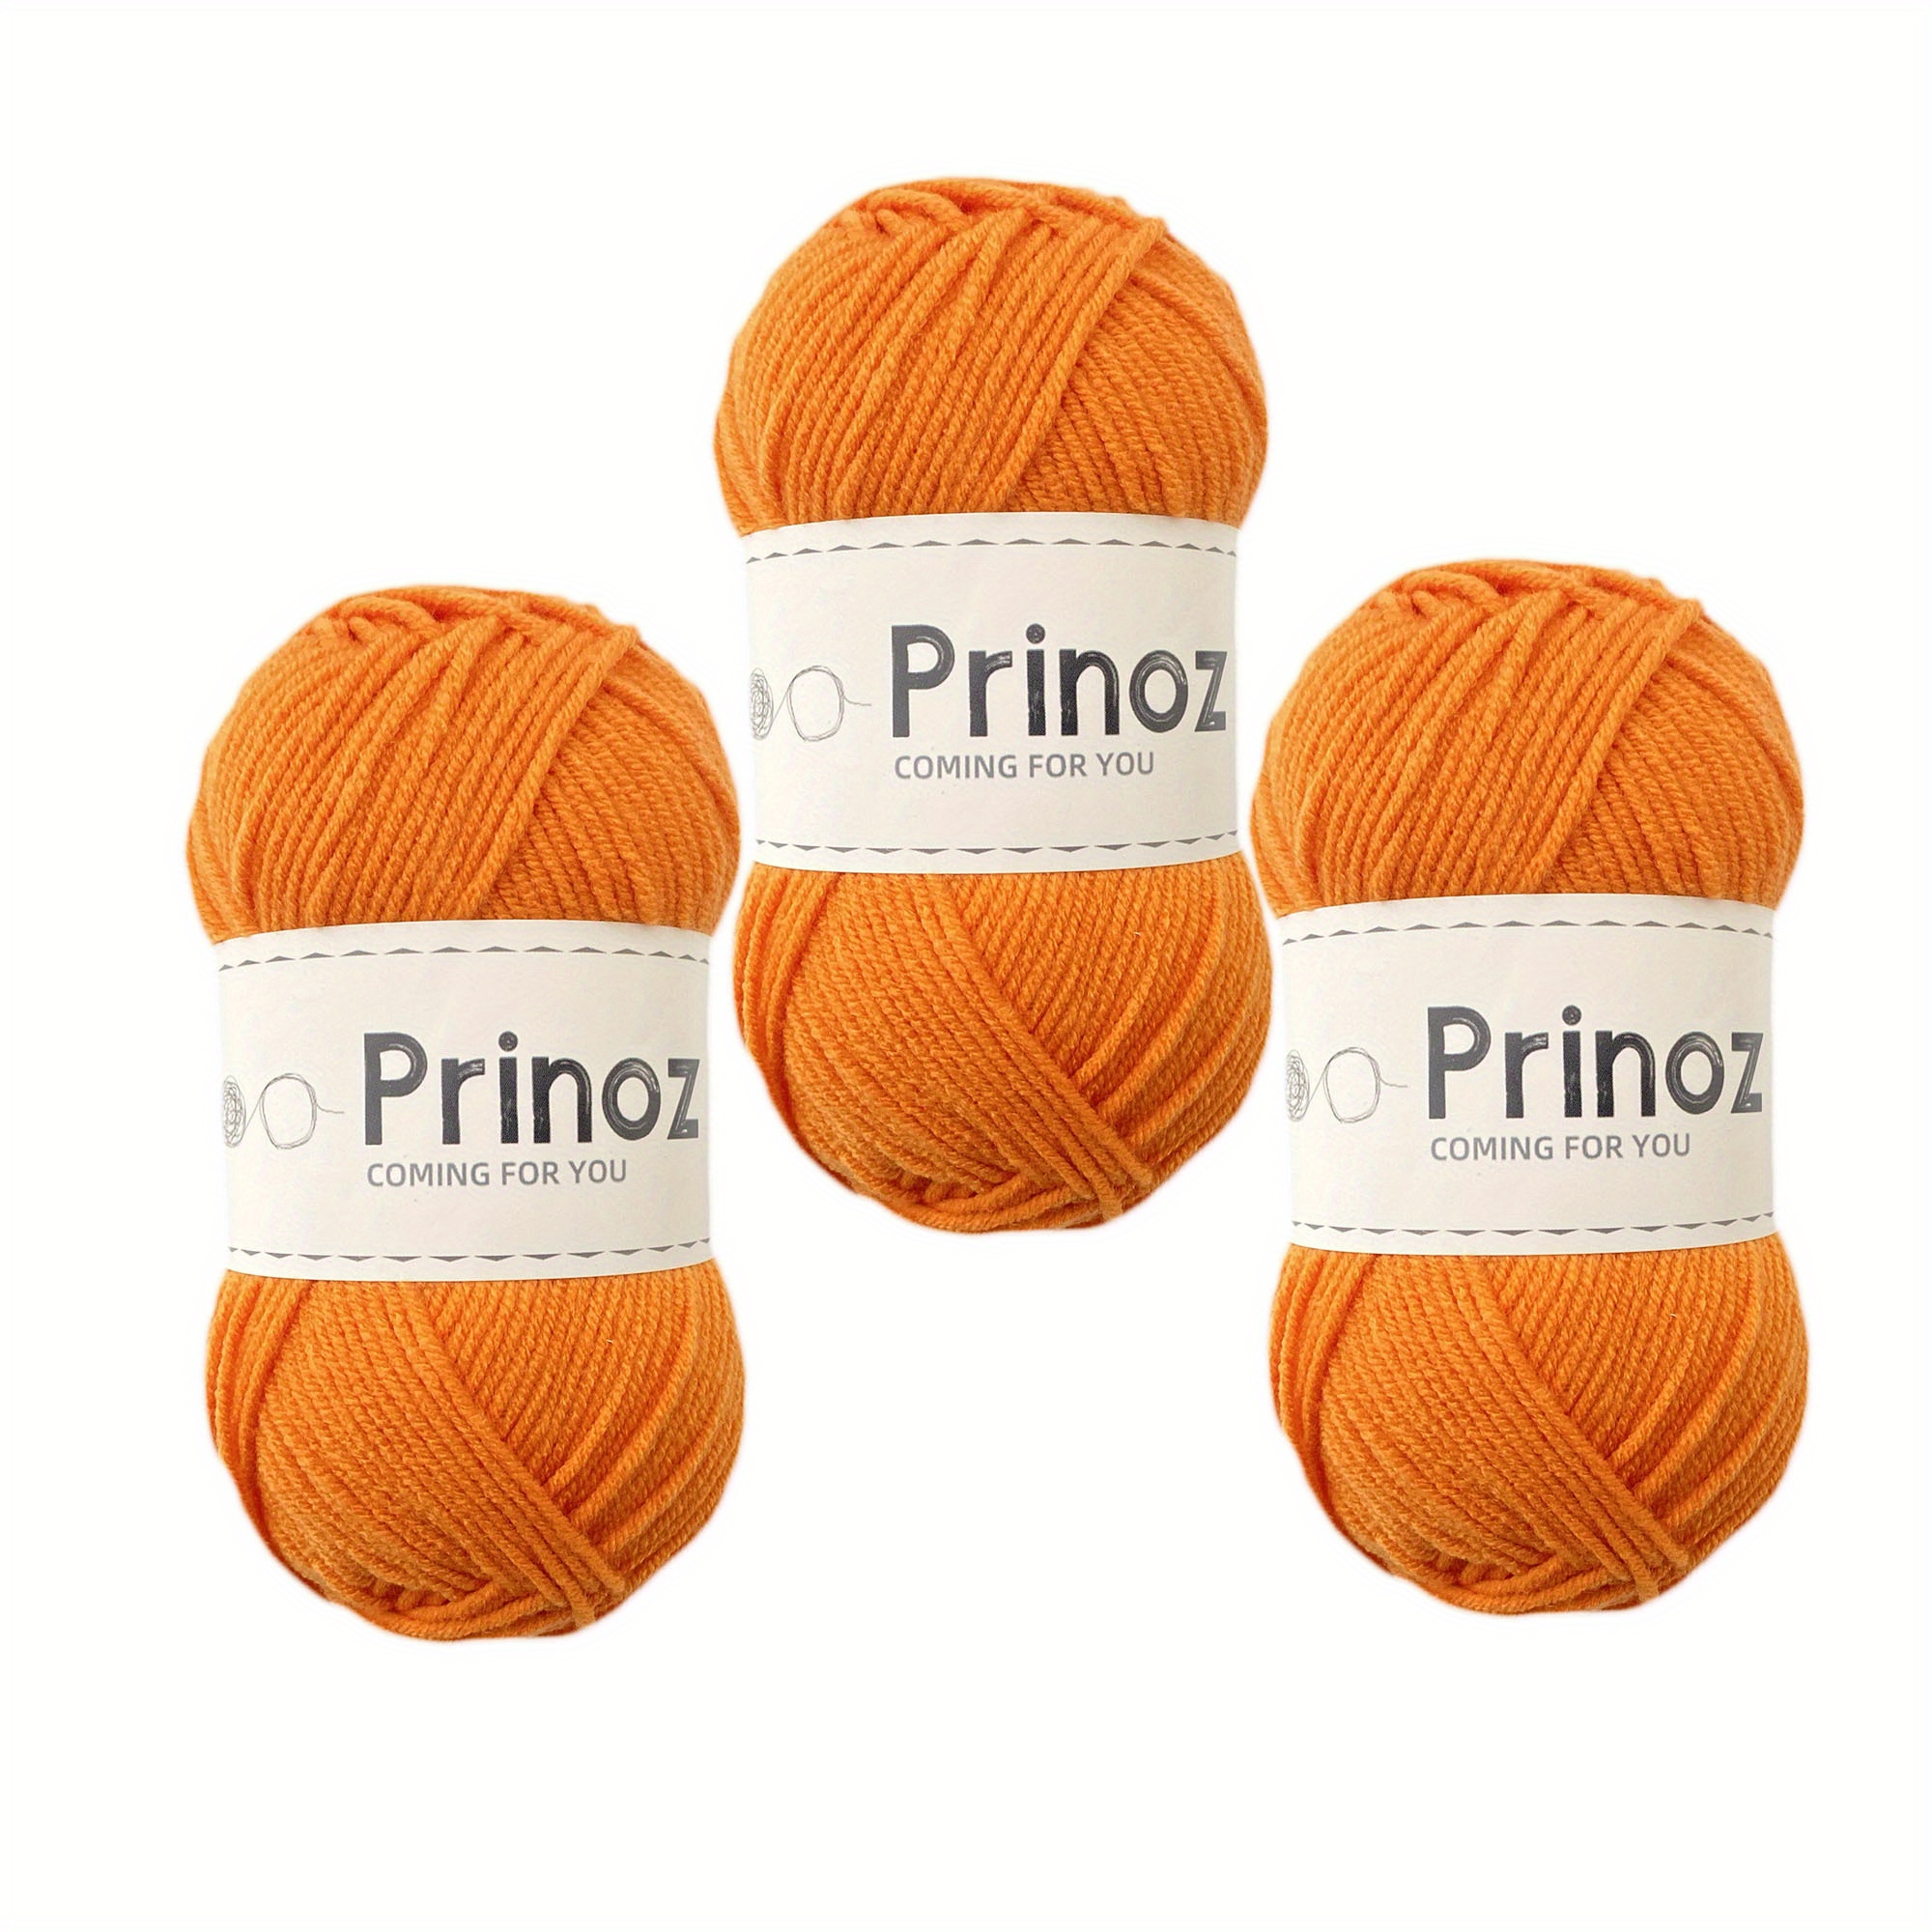 Yarn for Crocheting,Soft Yarn 1PCS Yarn for Crocheting Blankets Acrylic  Crochet Yarn for Sweater,Hat,Socks,Baby Blankets